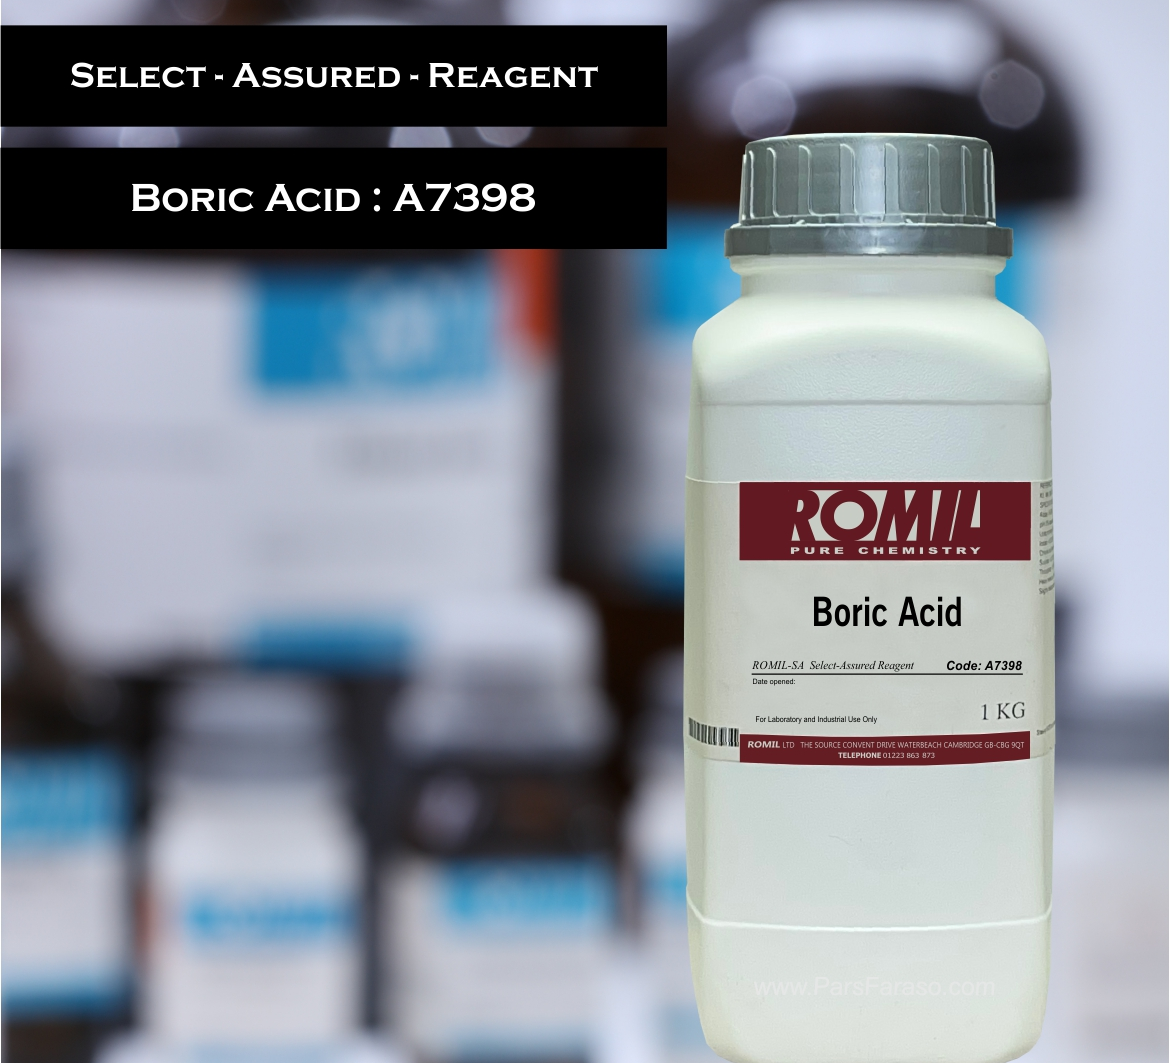 اسید بوریک با کد روميل A7398 - خرید و فروش مواد شیمیایی